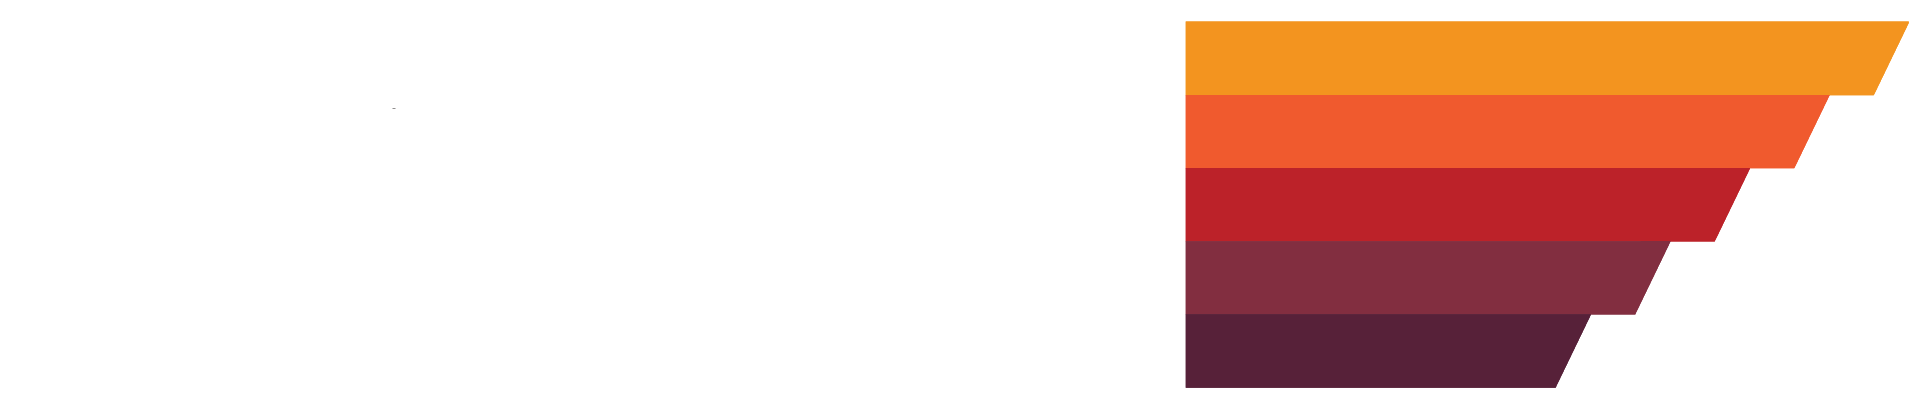 Crows Coffee Kansas City Logo Reversed